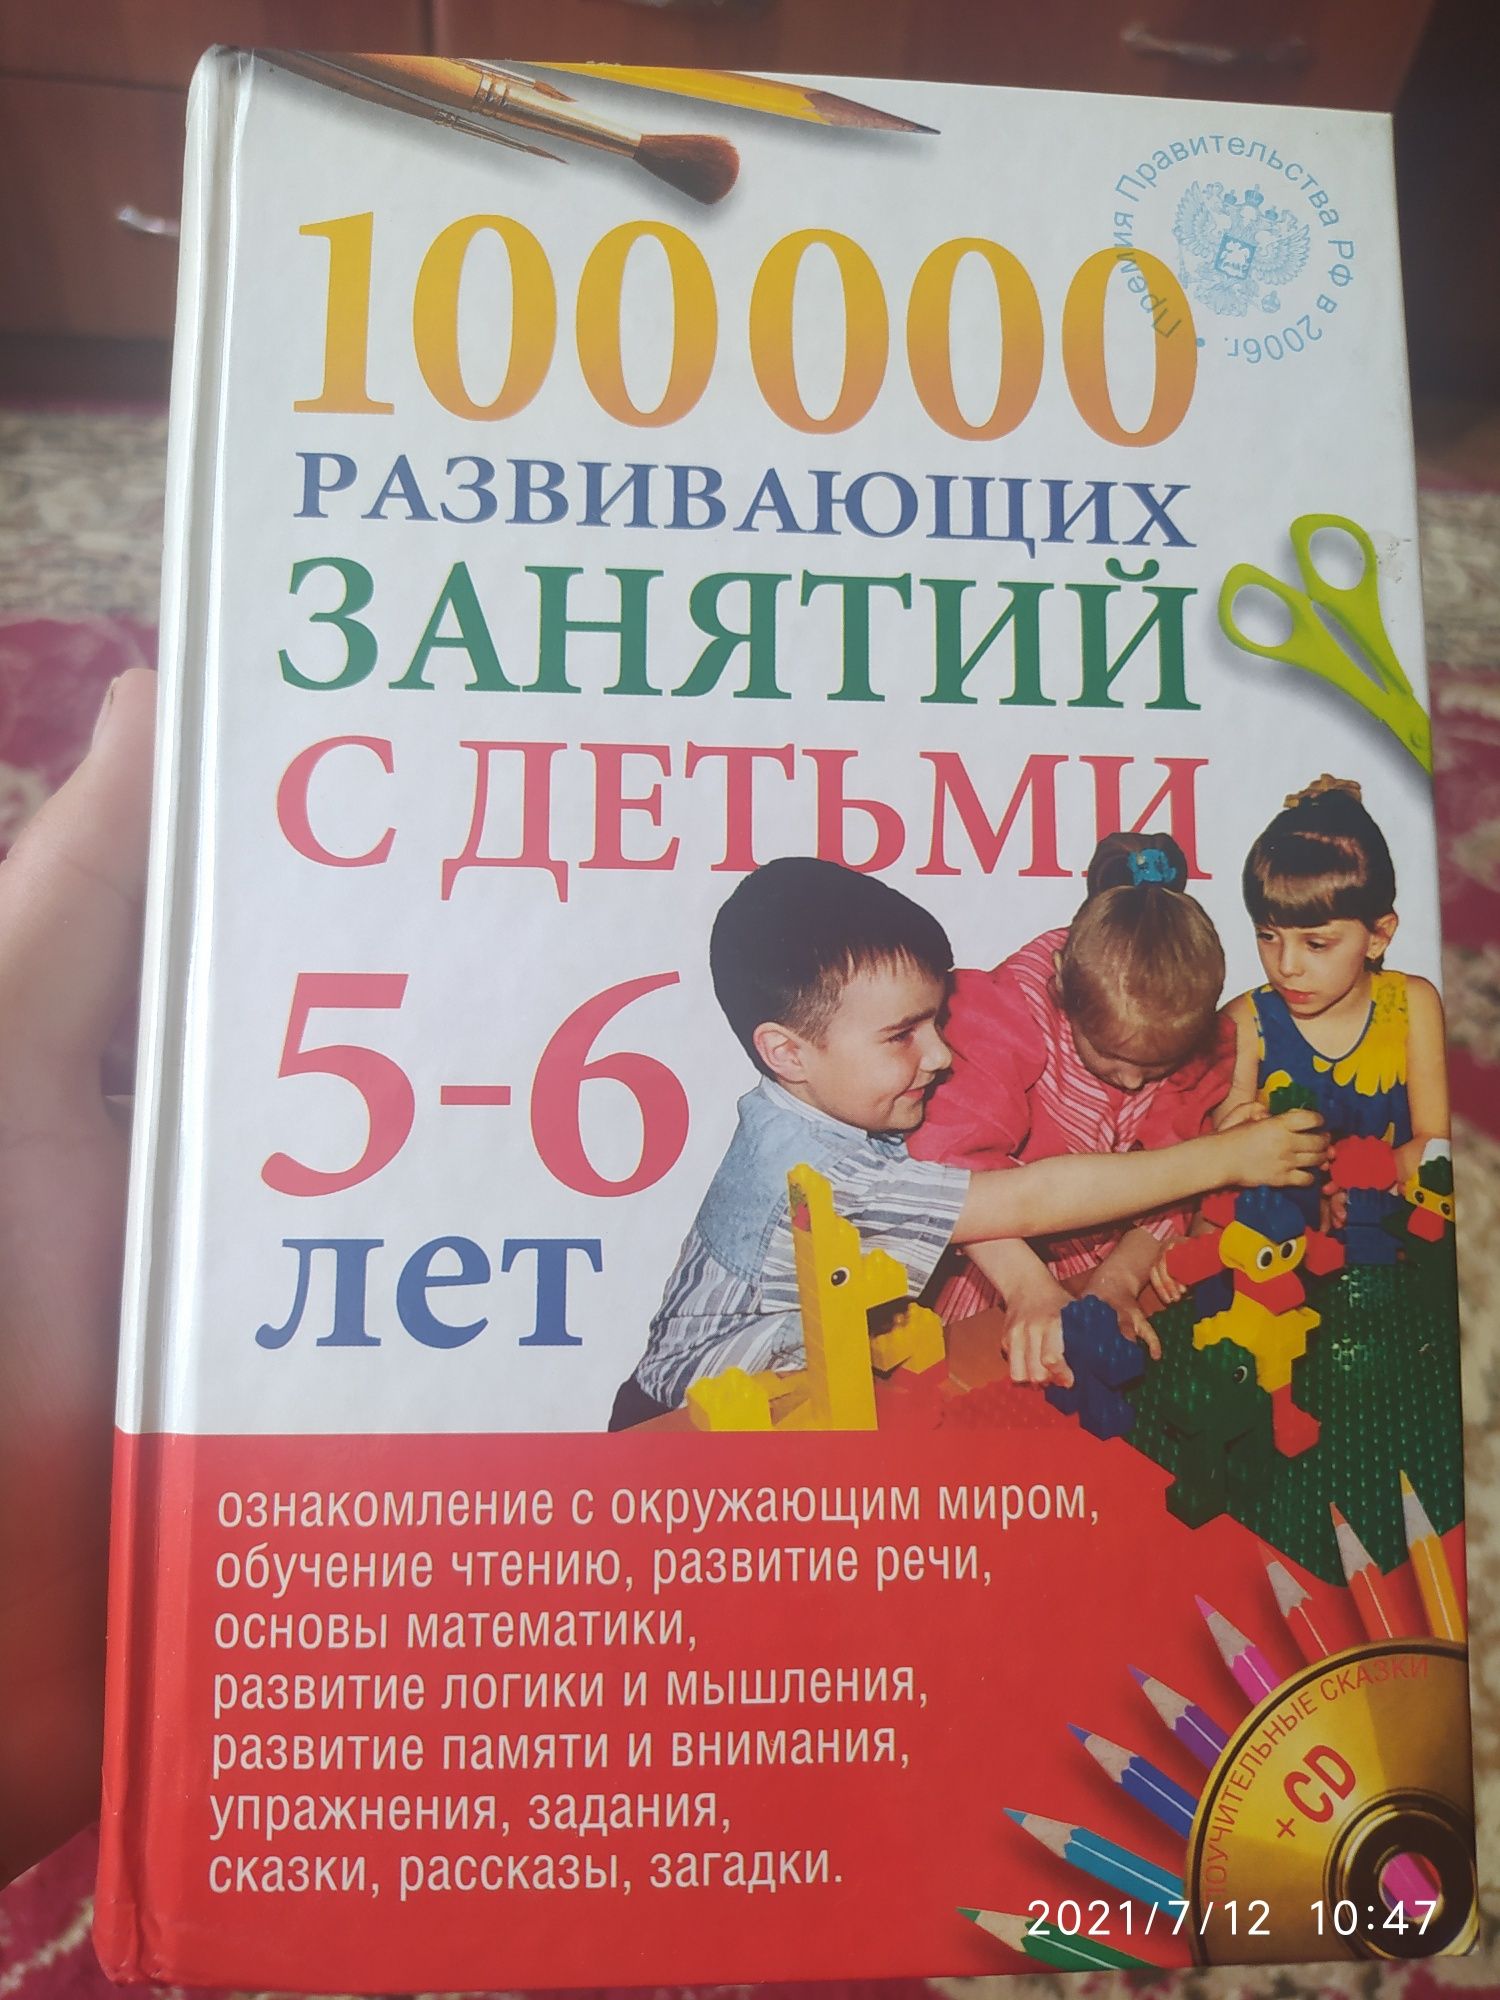 Книга " 100000 развивающих занятий с детьми 5-6 лет